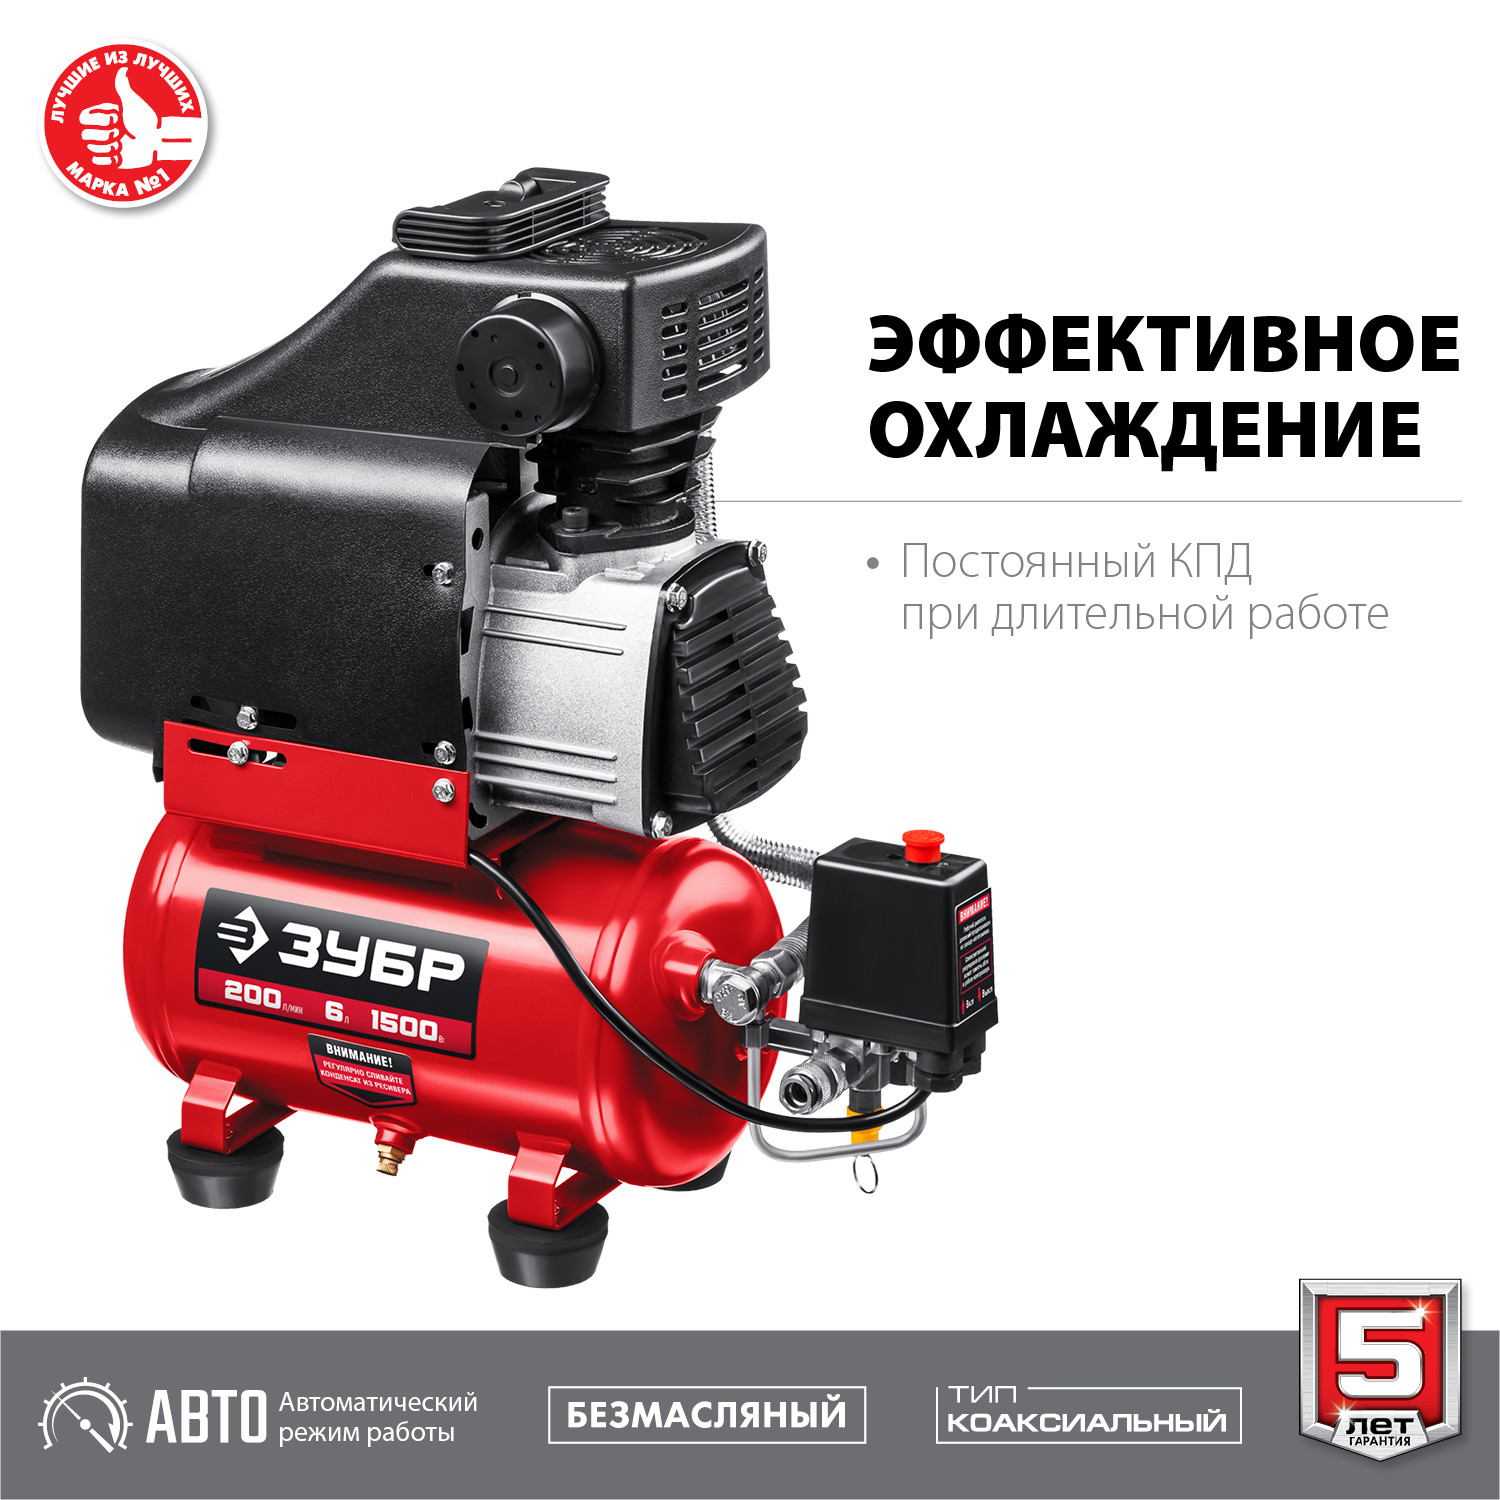 ЗУБР 200 л/мин, 6 л, 1500 Вт, безмасляный компрессор (КП-200-6)